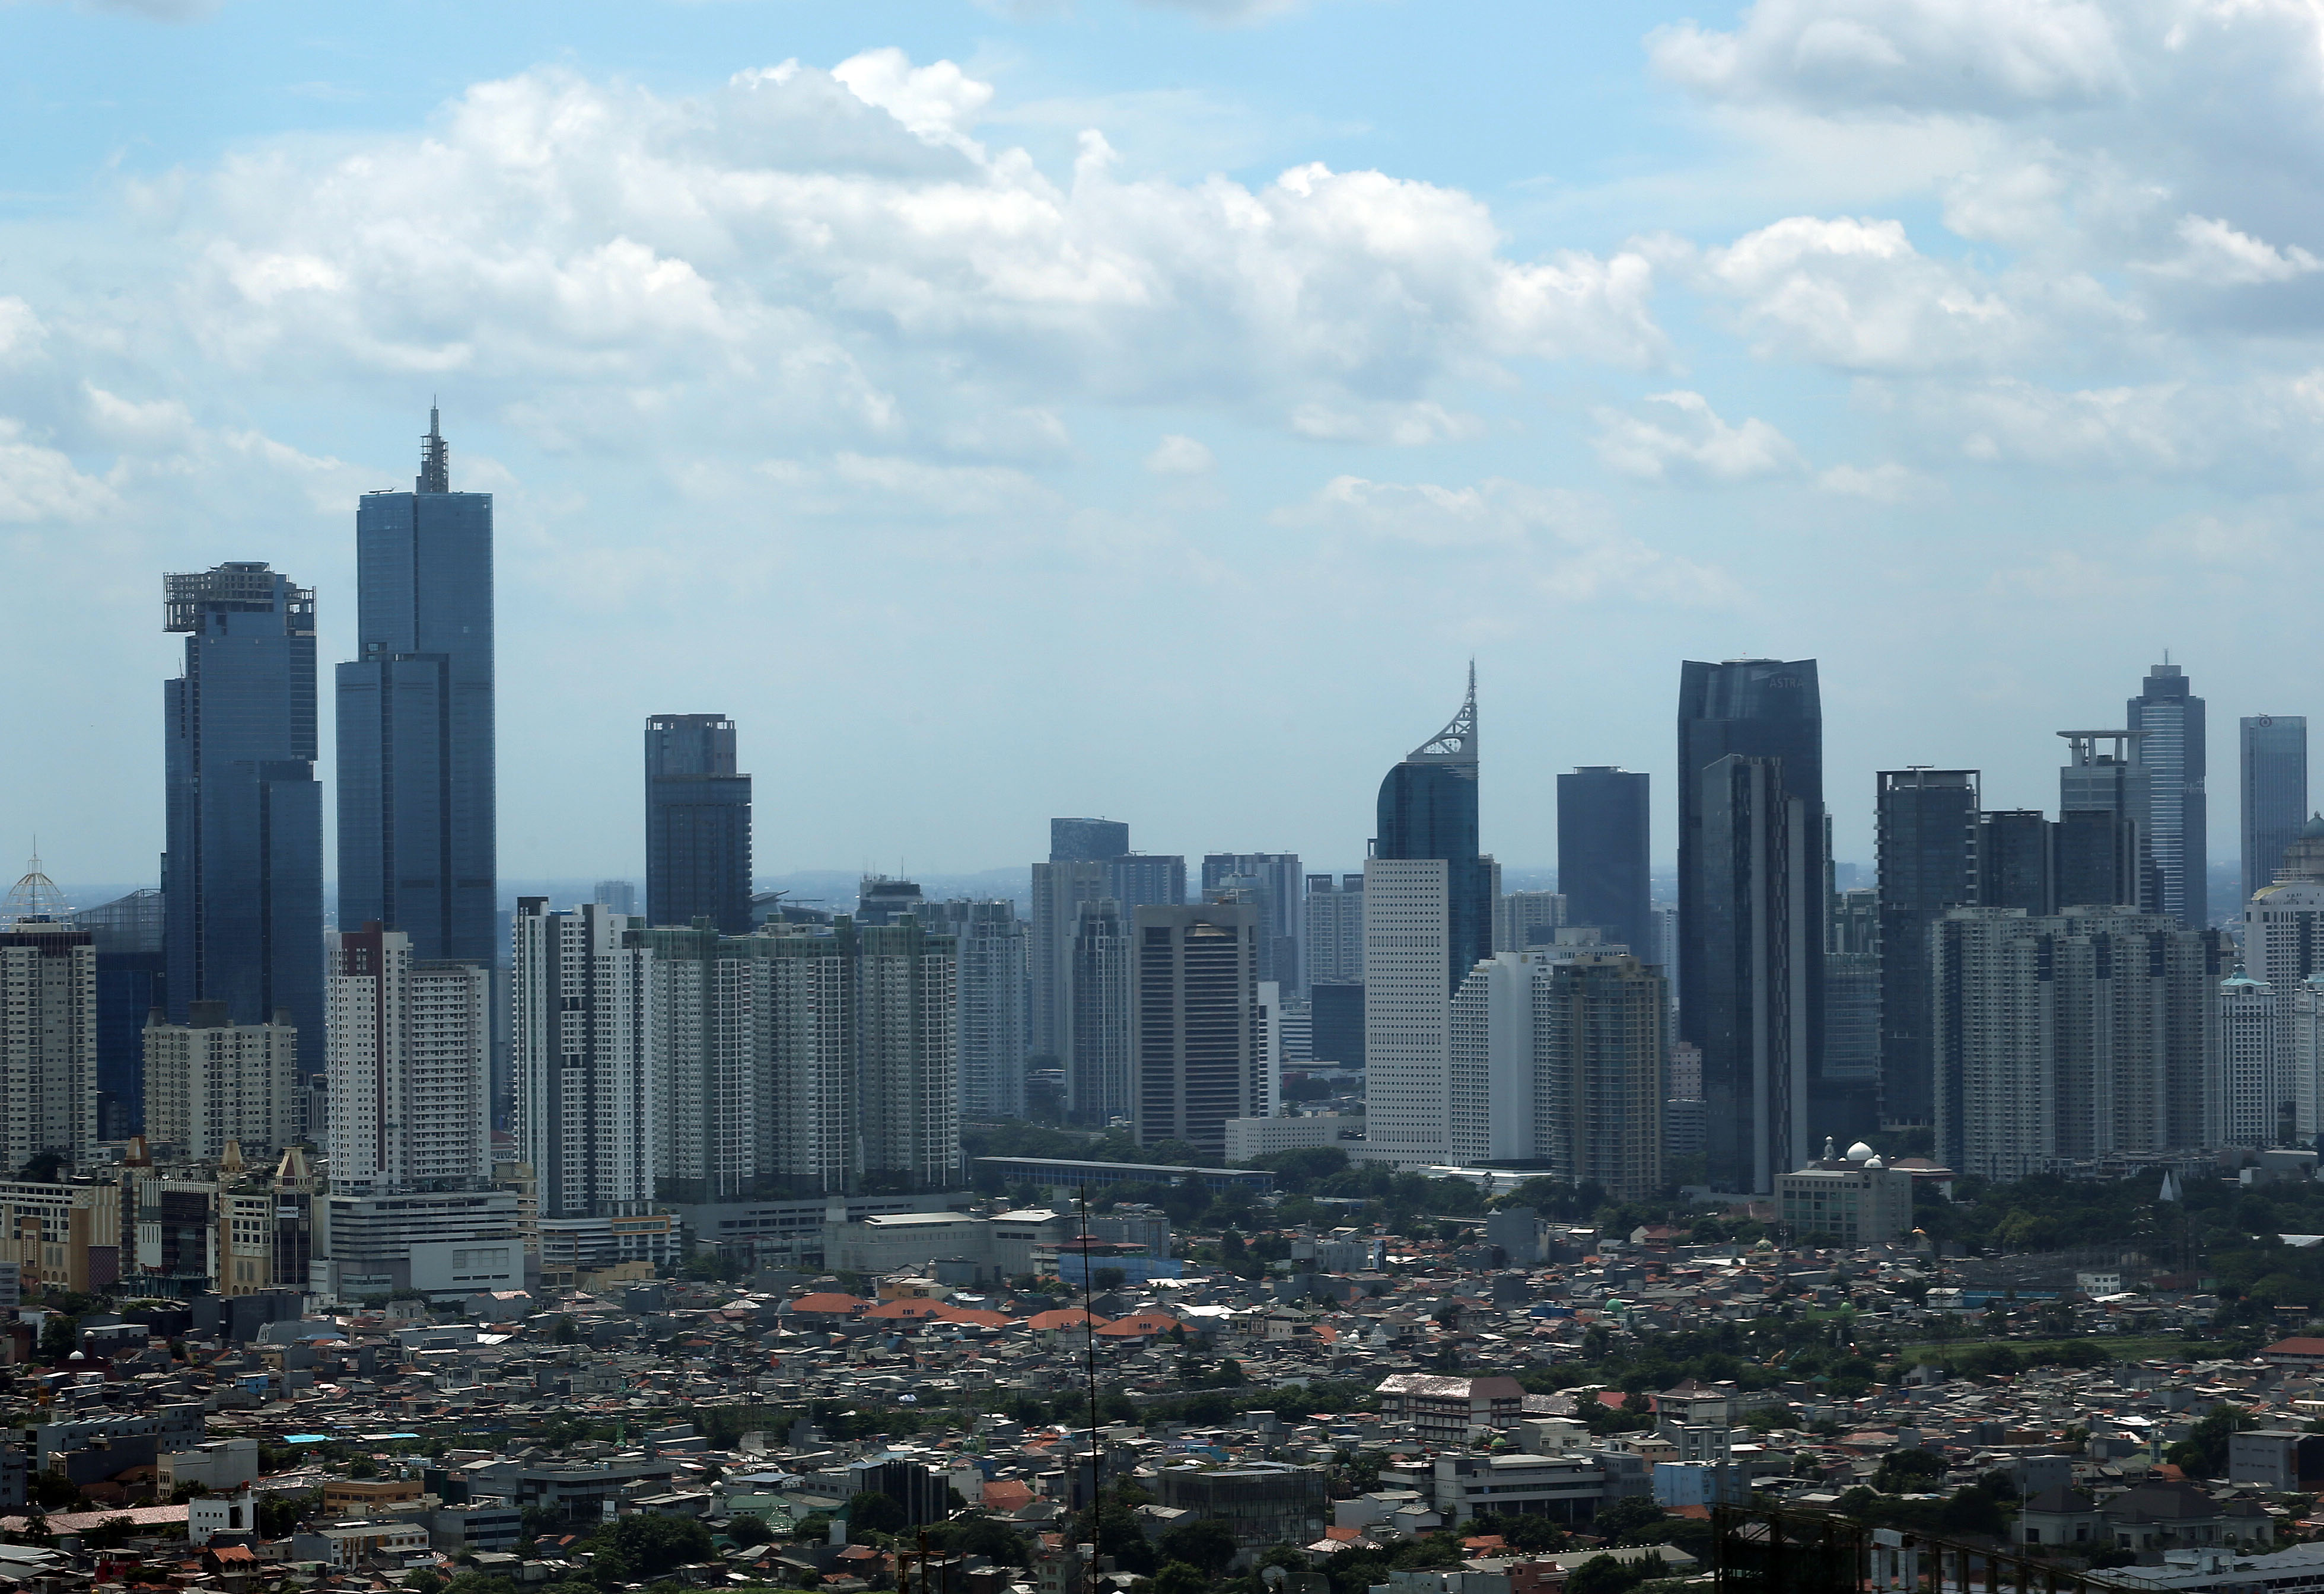 Jajaran gedung bertingkat di Jakarta, Rabu 22 Februari 2023. Kementerian Keuangan optimistis realisasi defisit pada Anggaran Pendapatan dan Belanja Negara (APBN) 2023 tidak akan lebih dari target yakni 2,84 persen. Foto : Panji Asmoro/TrenAsia